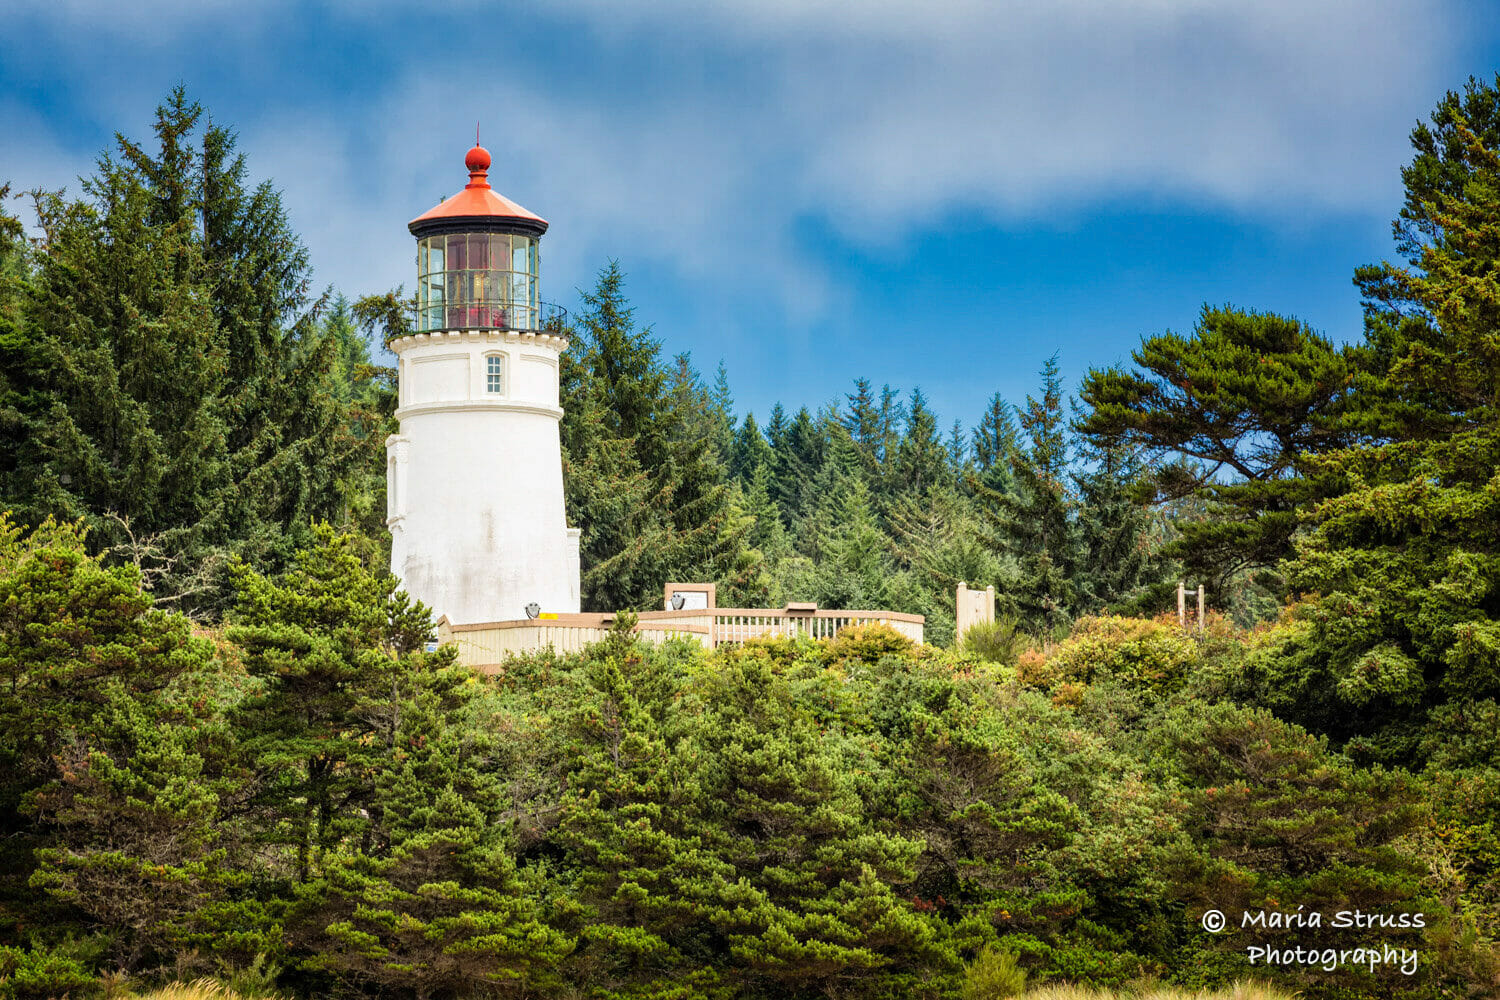 A photo of the Umpqua Lighthouse in Oregon